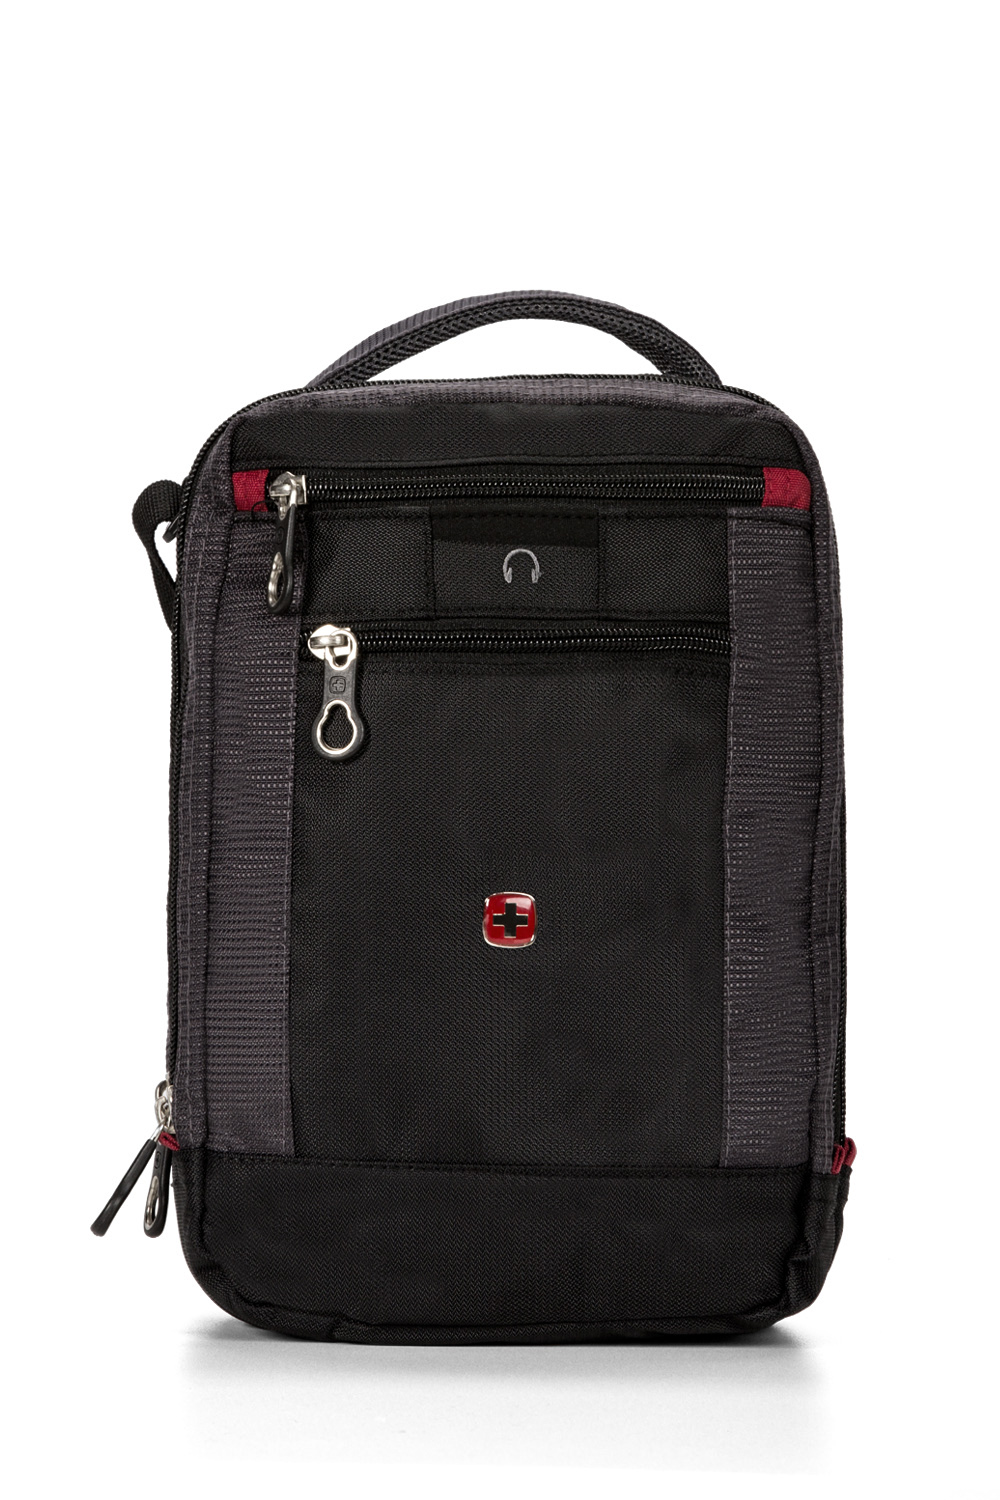 Swissgear 3988 ScanSmart Laptop Backpack - Black